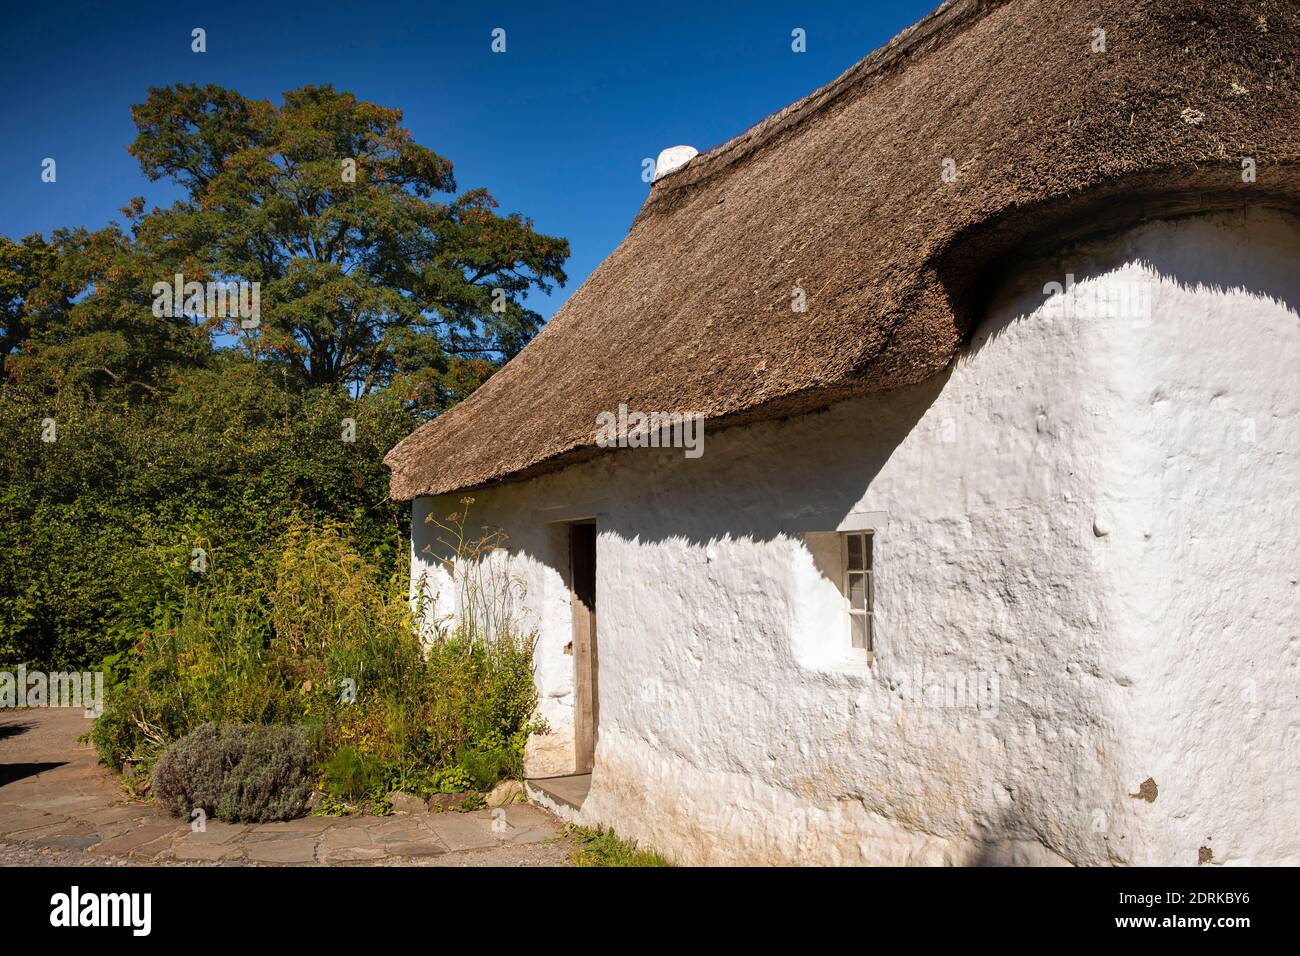 Großbritannien, Wales, Cardiff, St Fagans, National Museum of History, Nantwallter Cottage, c1770 Schlamm (Clom) gebaut Bauernhof Arbeiter Haus von Tallaris Carmarthensh Stockfoto